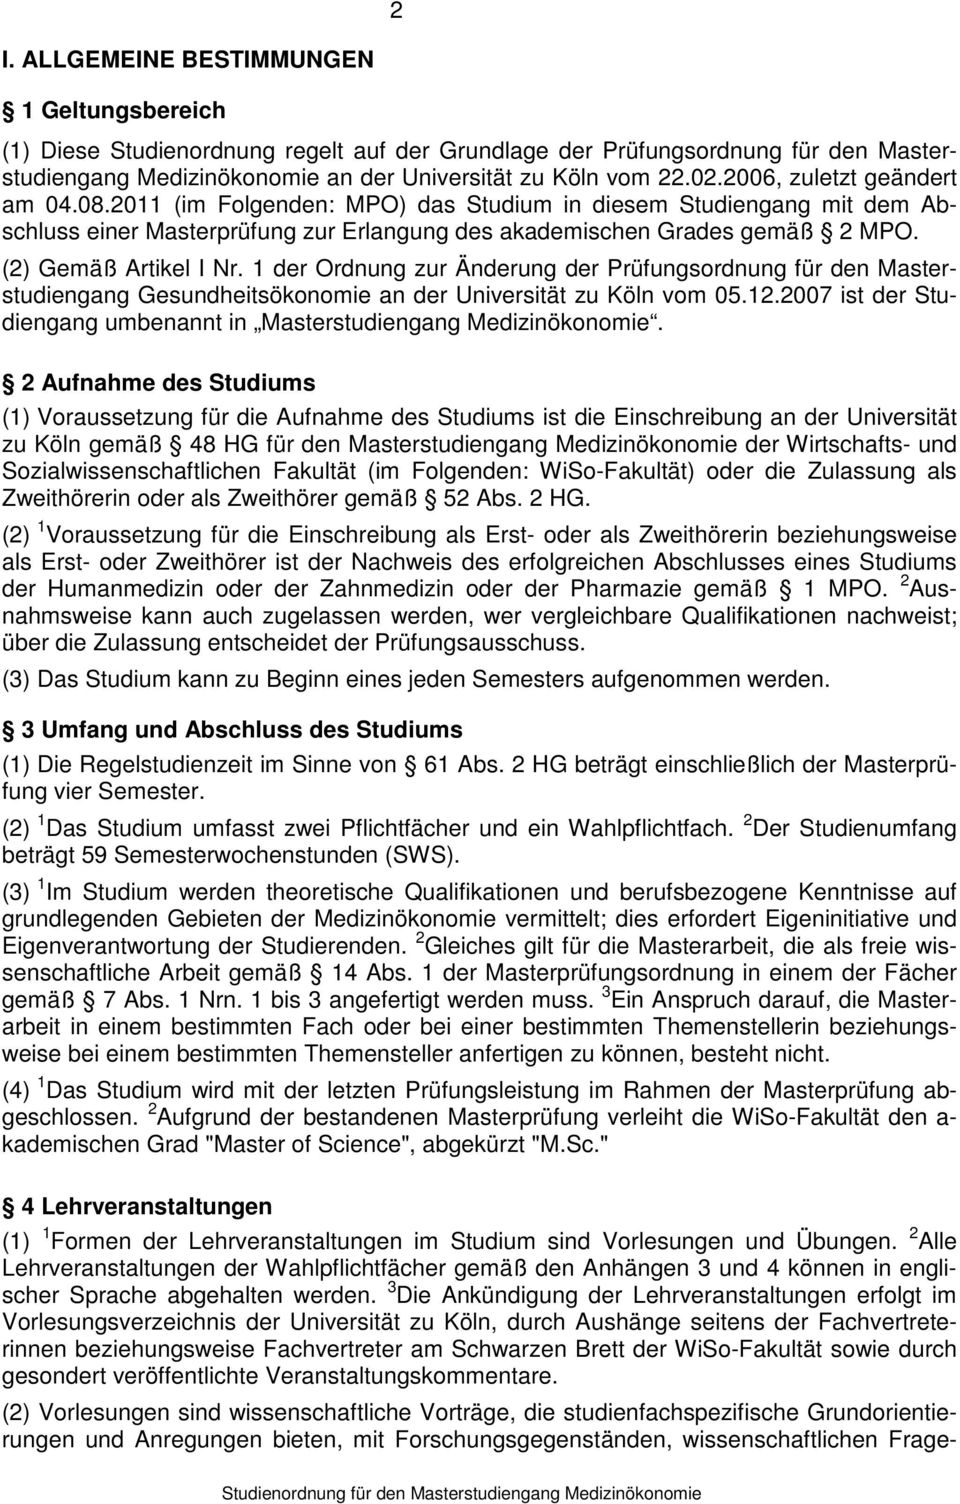 (2) Gemäß Artikel I Nr. 1 der Ordnung zur Änderung der Prüfungsordnung für den Masterstudiengang Gesundheitsökonomie an der Universität zu Köln vom 05.12.